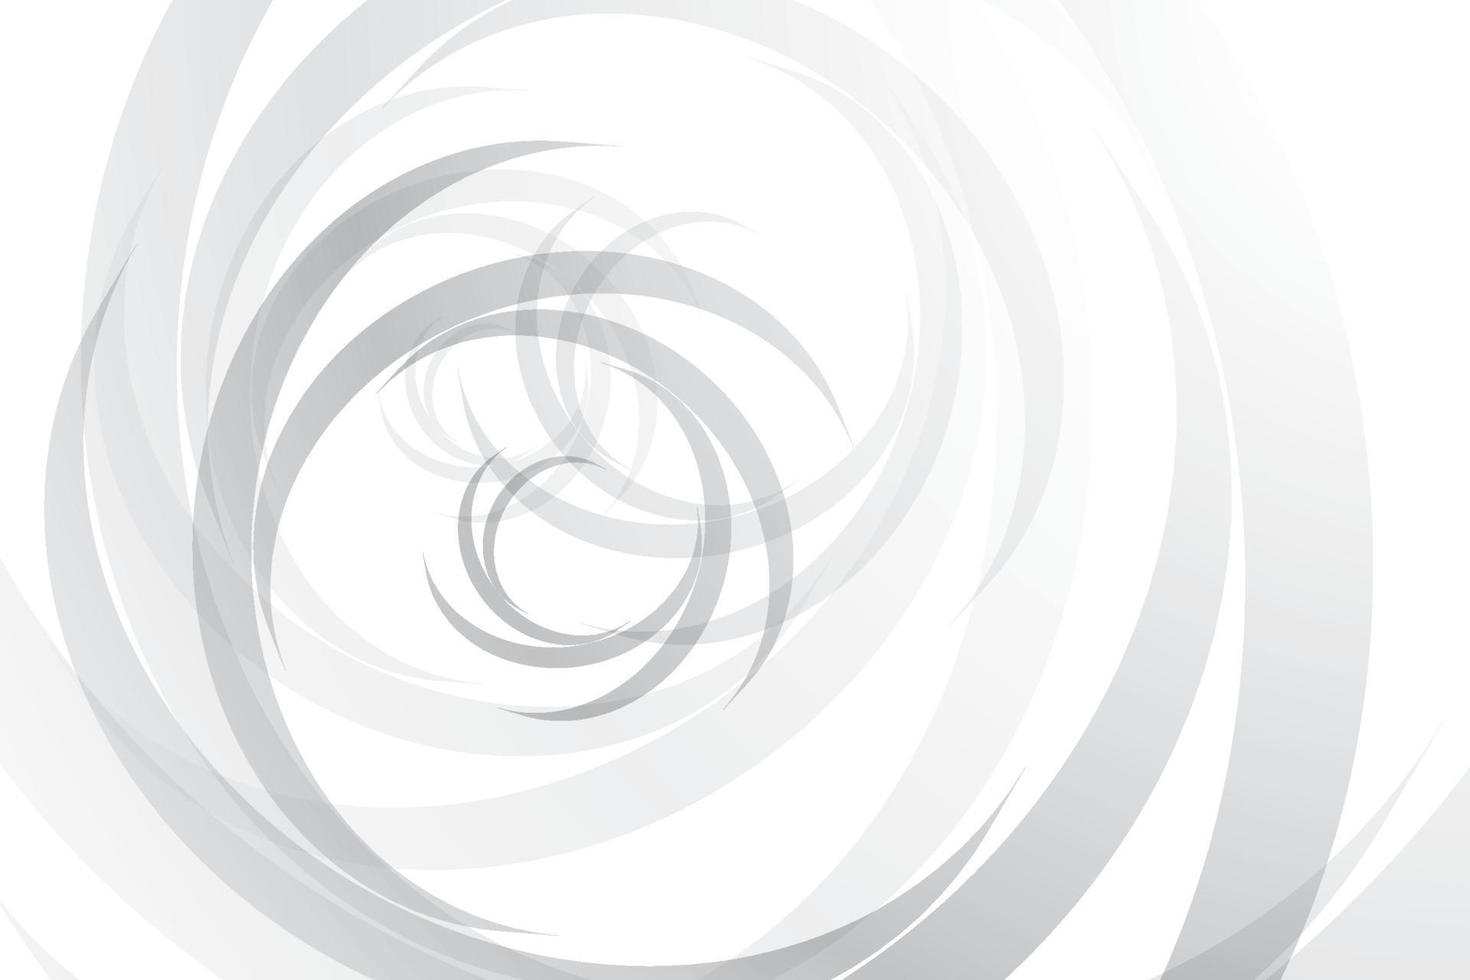 abstrakte weiße und graue Farbe, modernes Design streift Hintergrund mit geometrischer runder Form. Vektor-Illustration. vektor